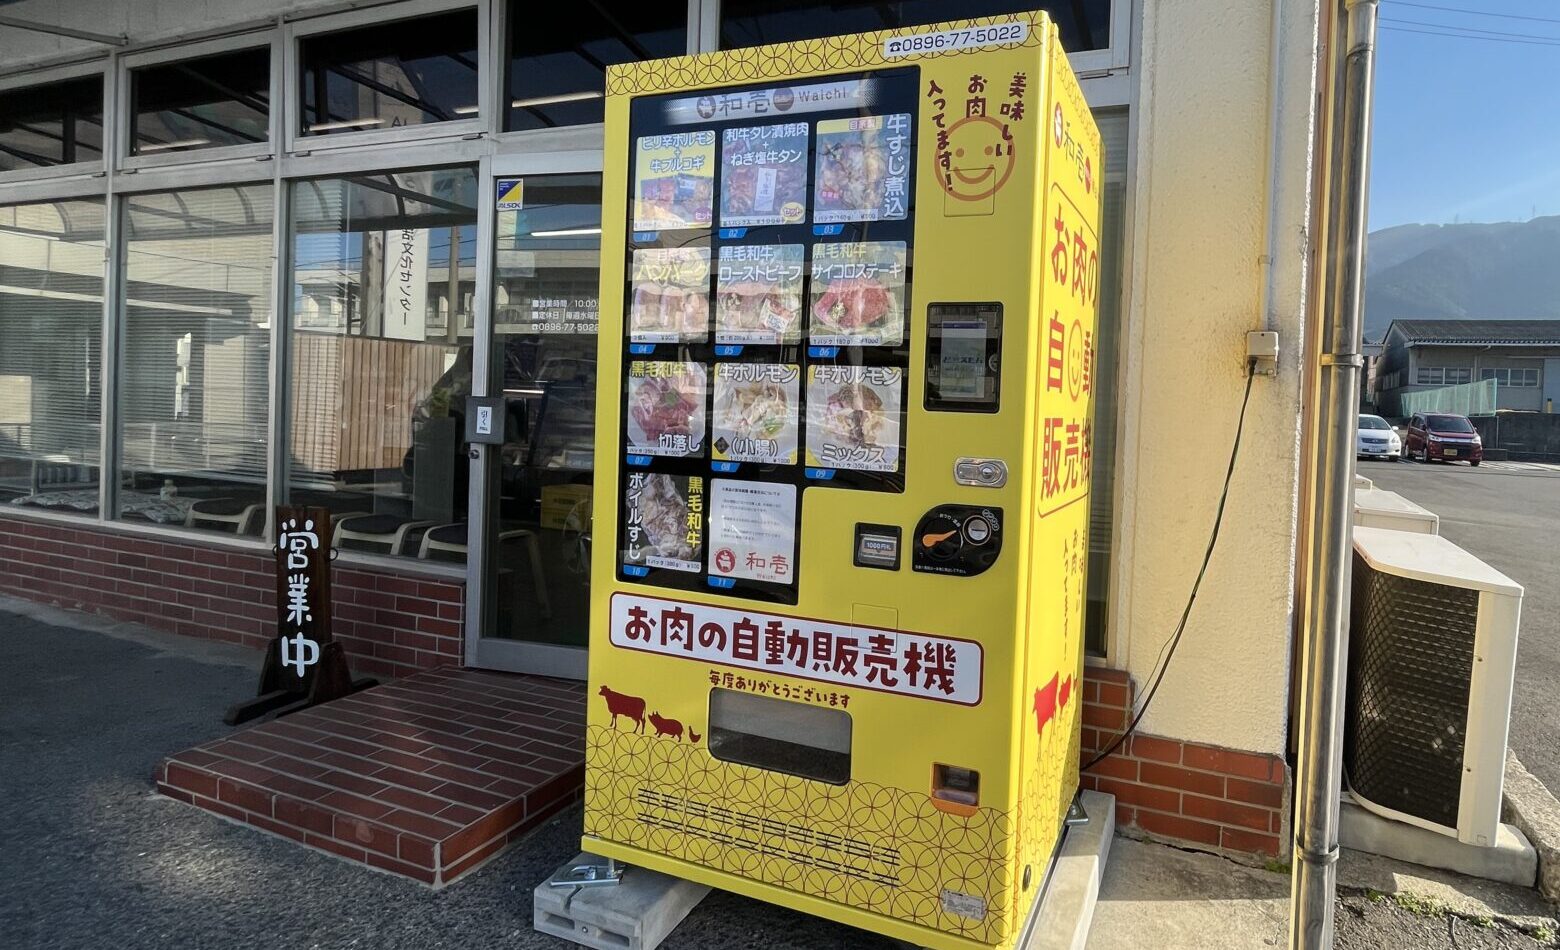 和壱精肉店自動販売機サムネイル画像